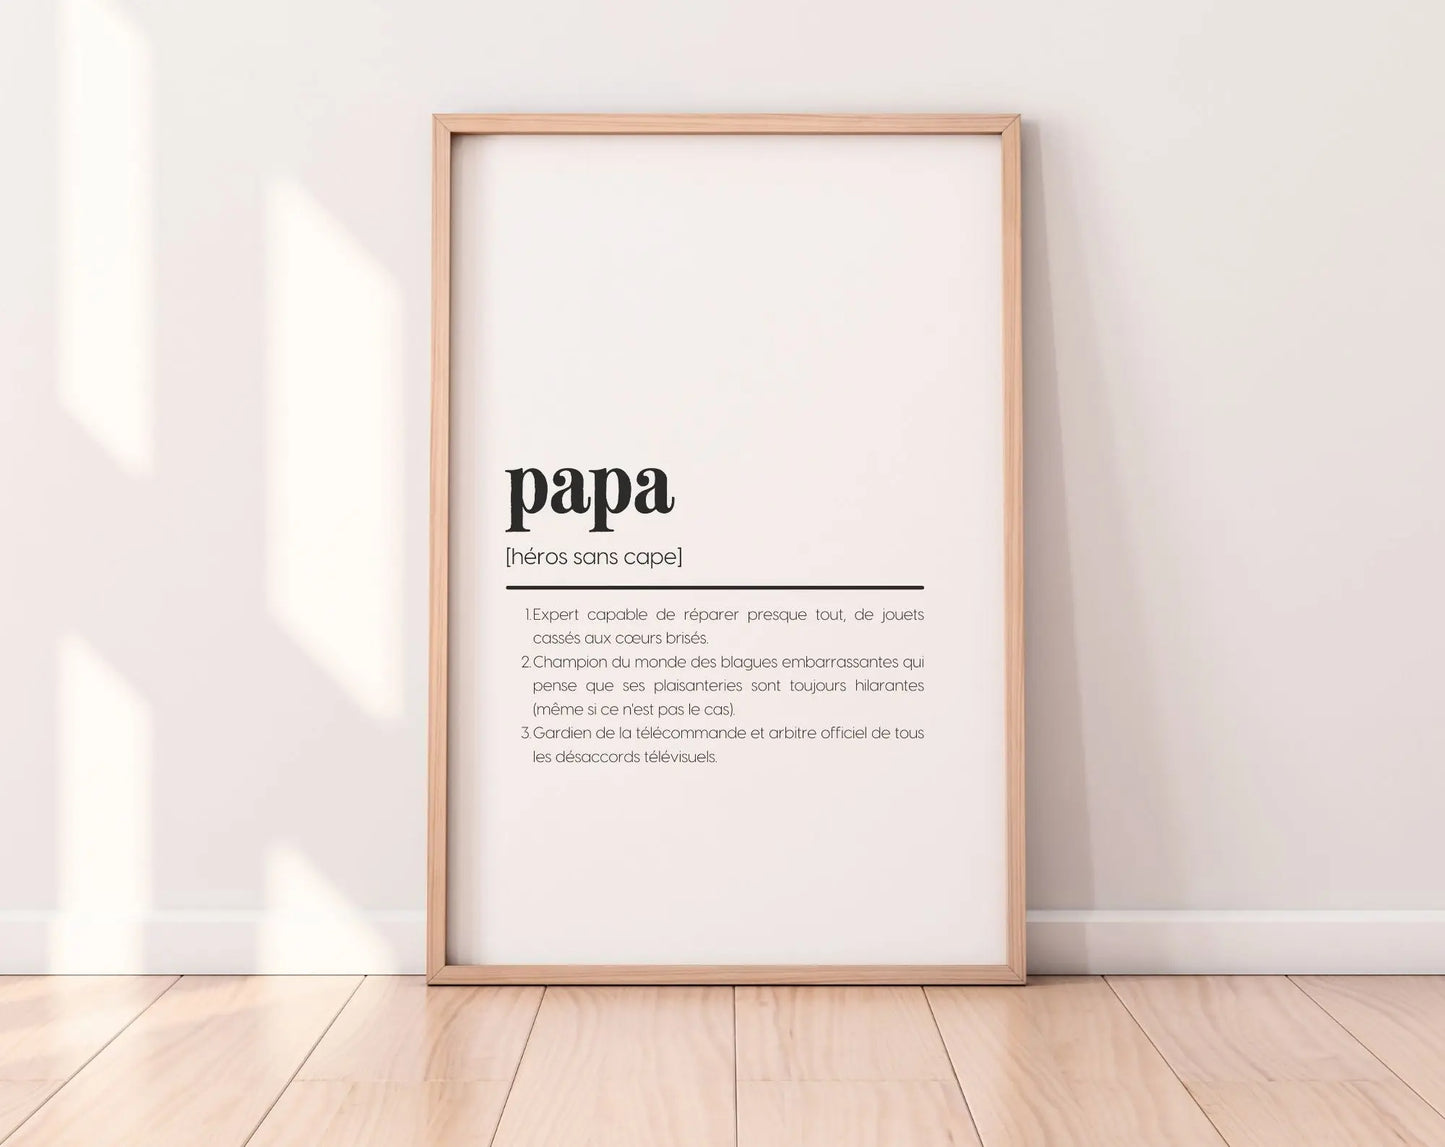 Pack 2 affiches définition papa et maman - Affiche définition humour famille FLTMfrance